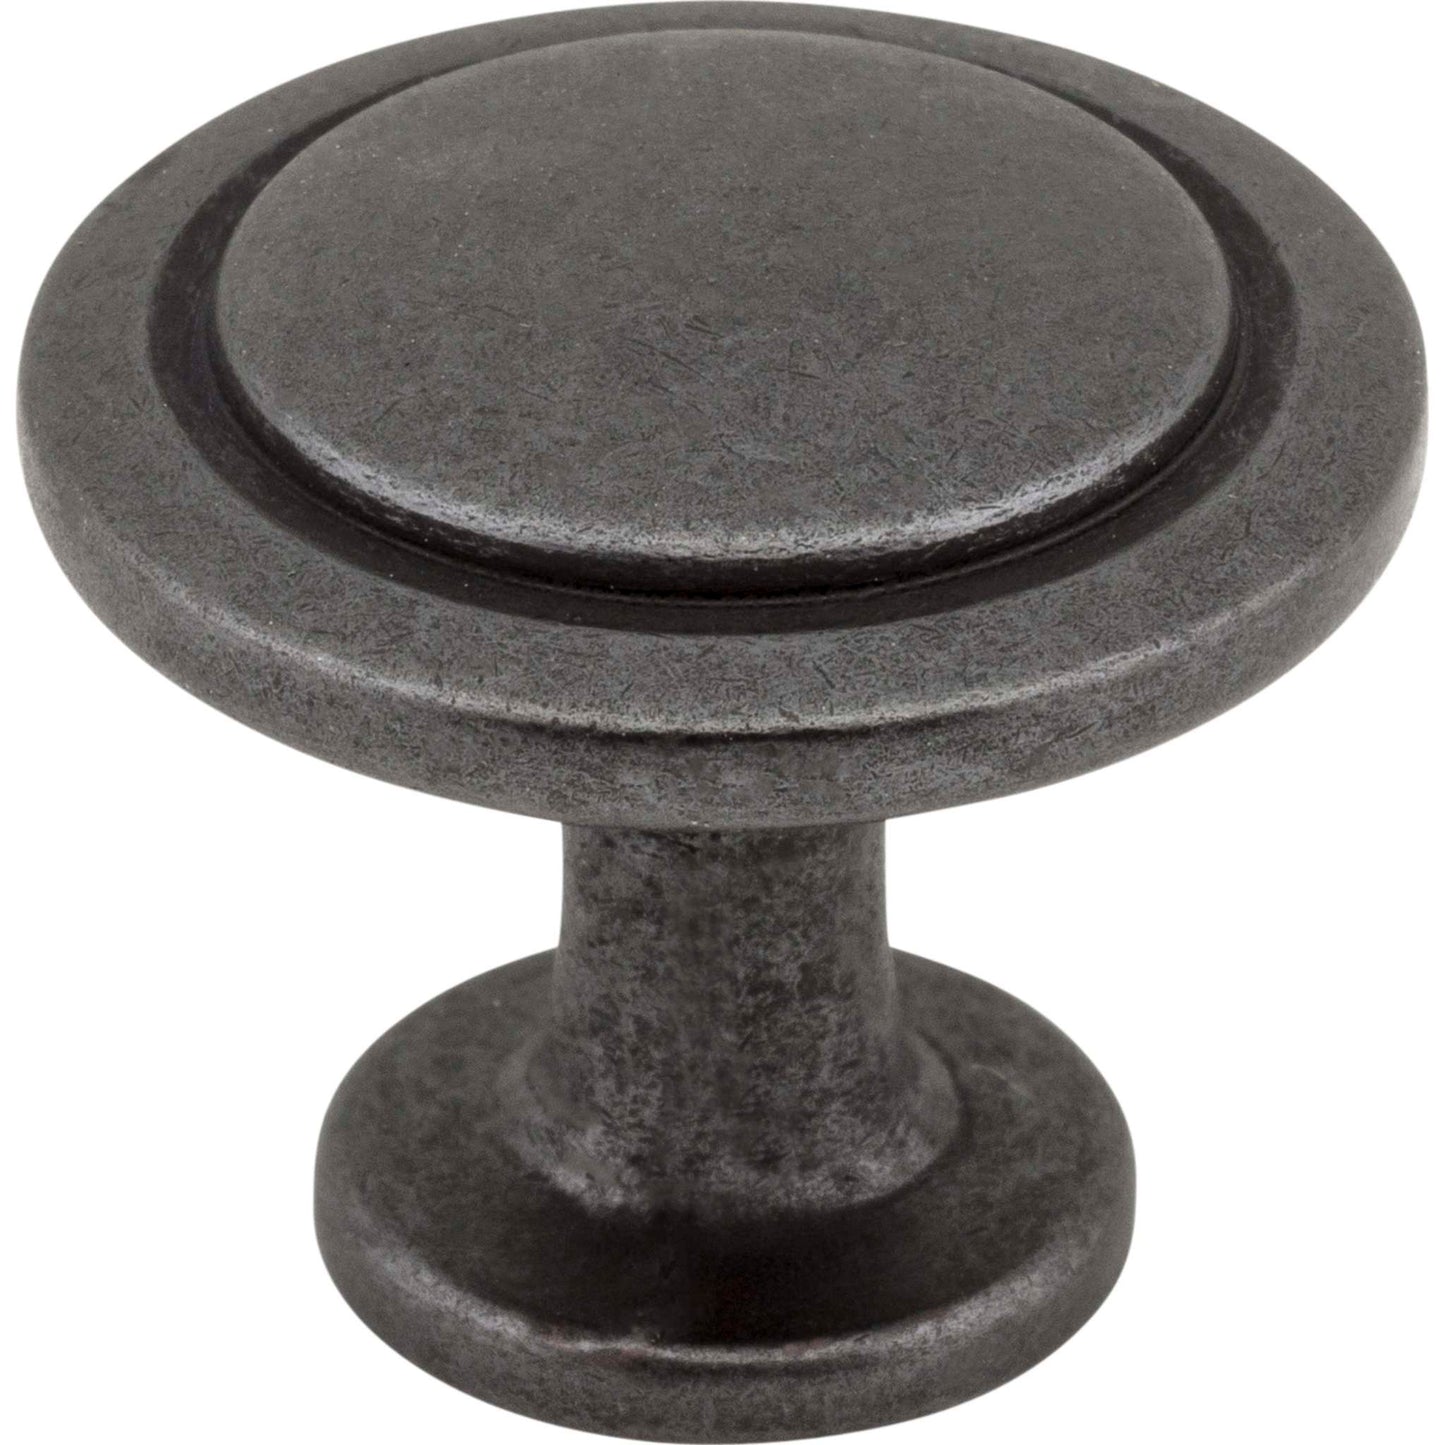 Elements - 1-1/4" Round Button Gatsby Cabinet Knob